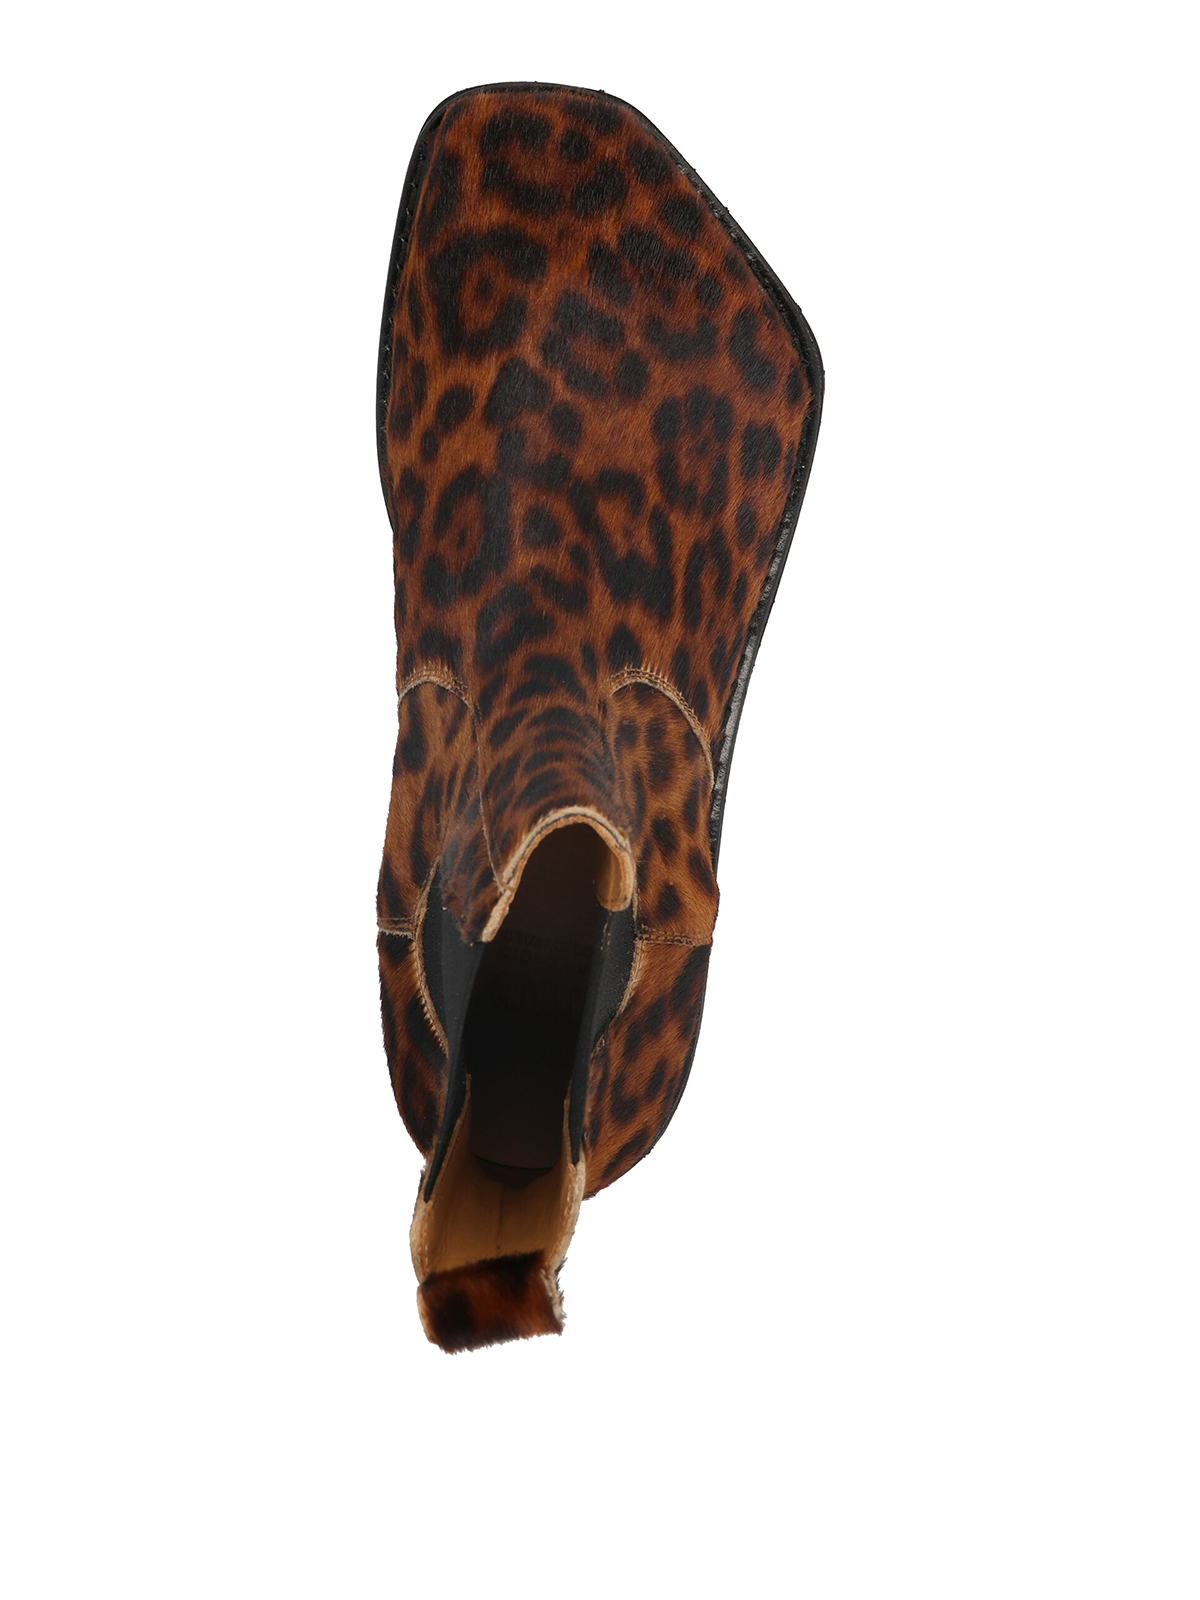 Leopard Punk Ankle Boots